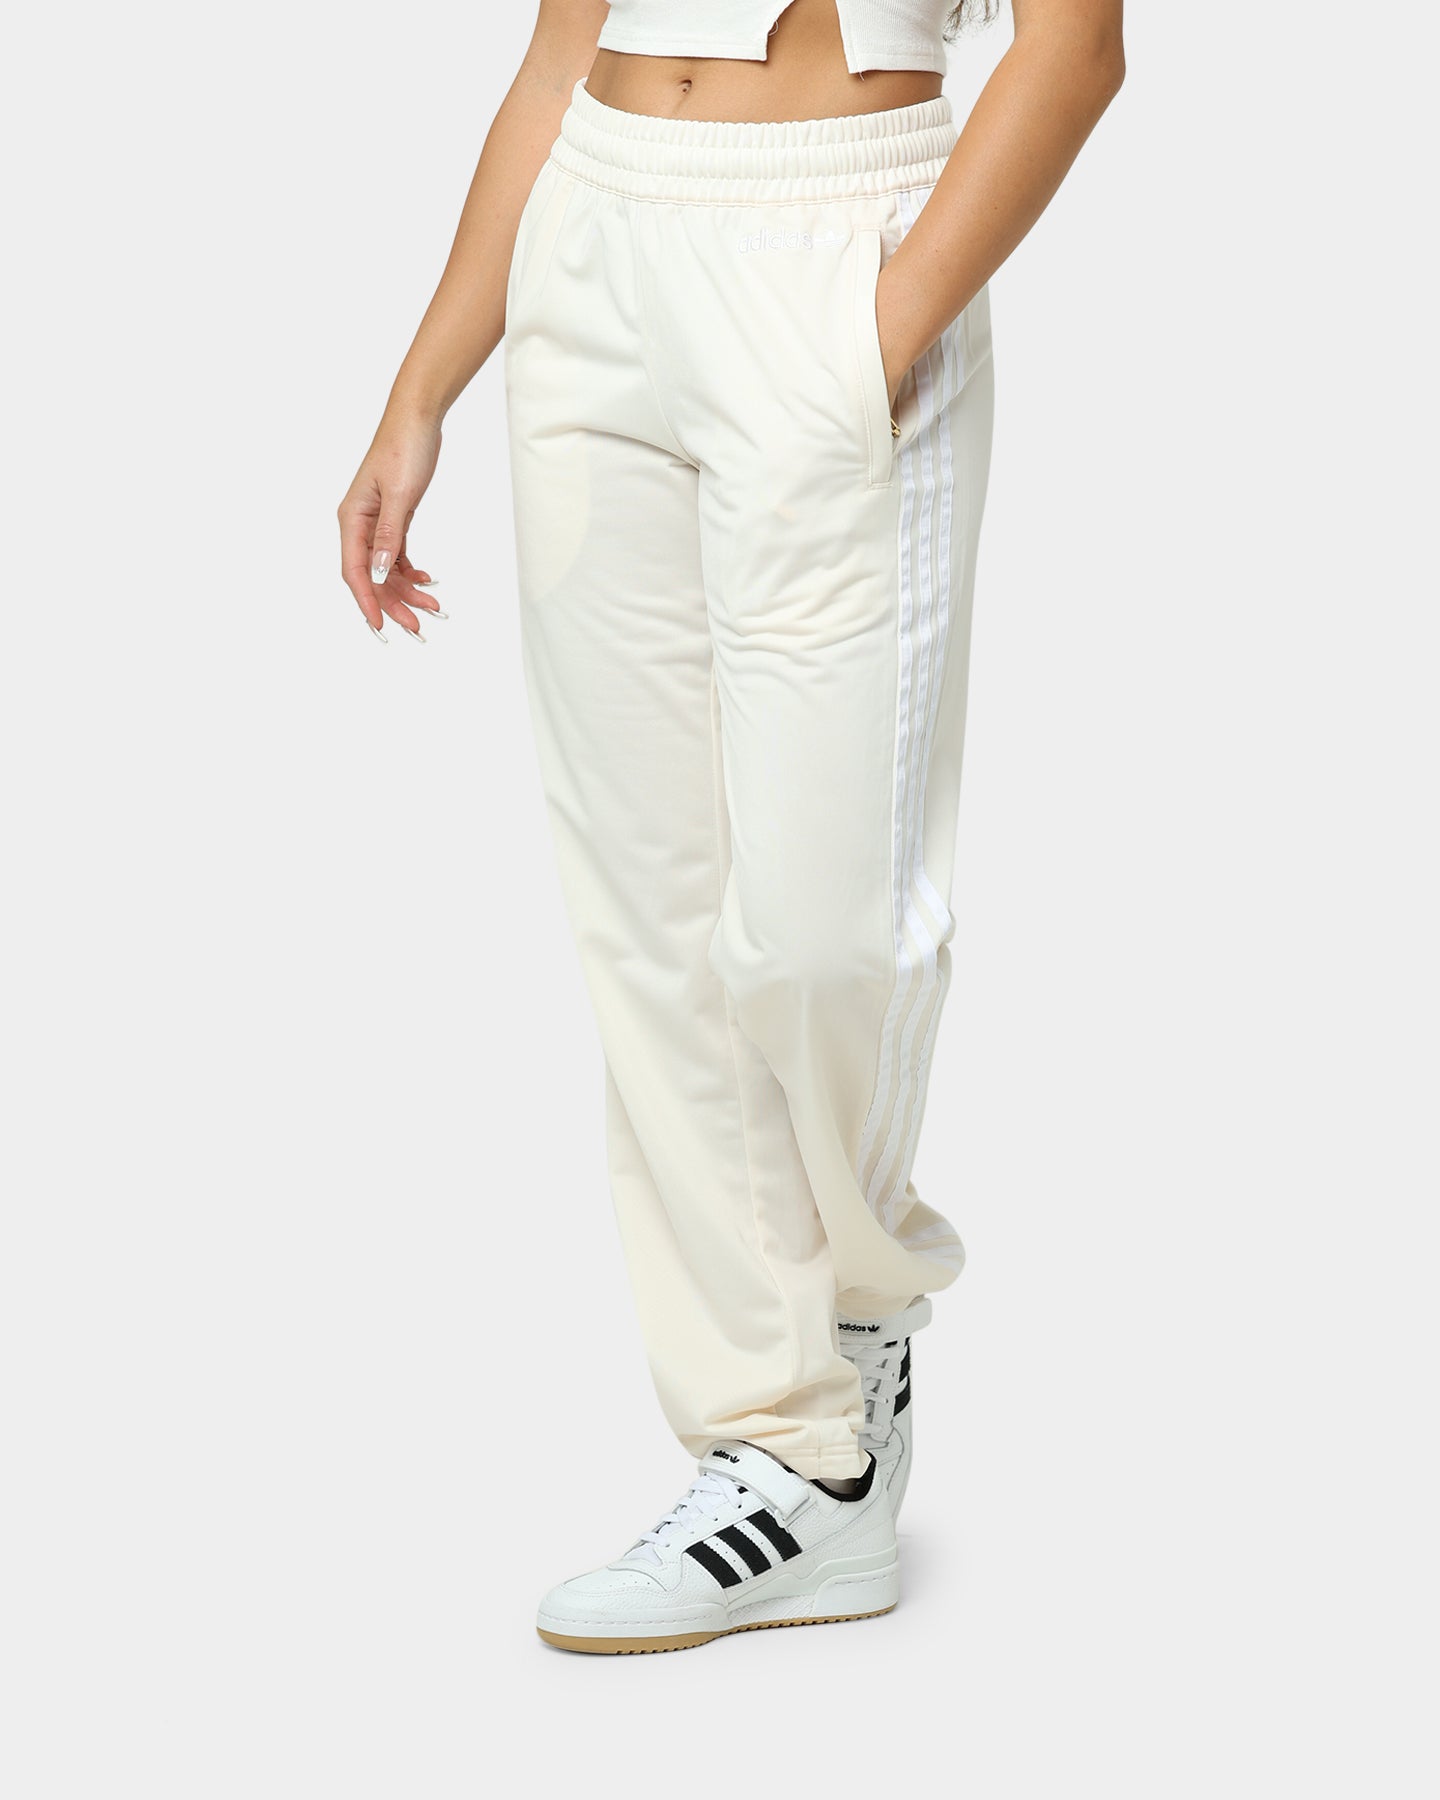 Adidas TIRO Track Pants White Women's Stripe Adidas